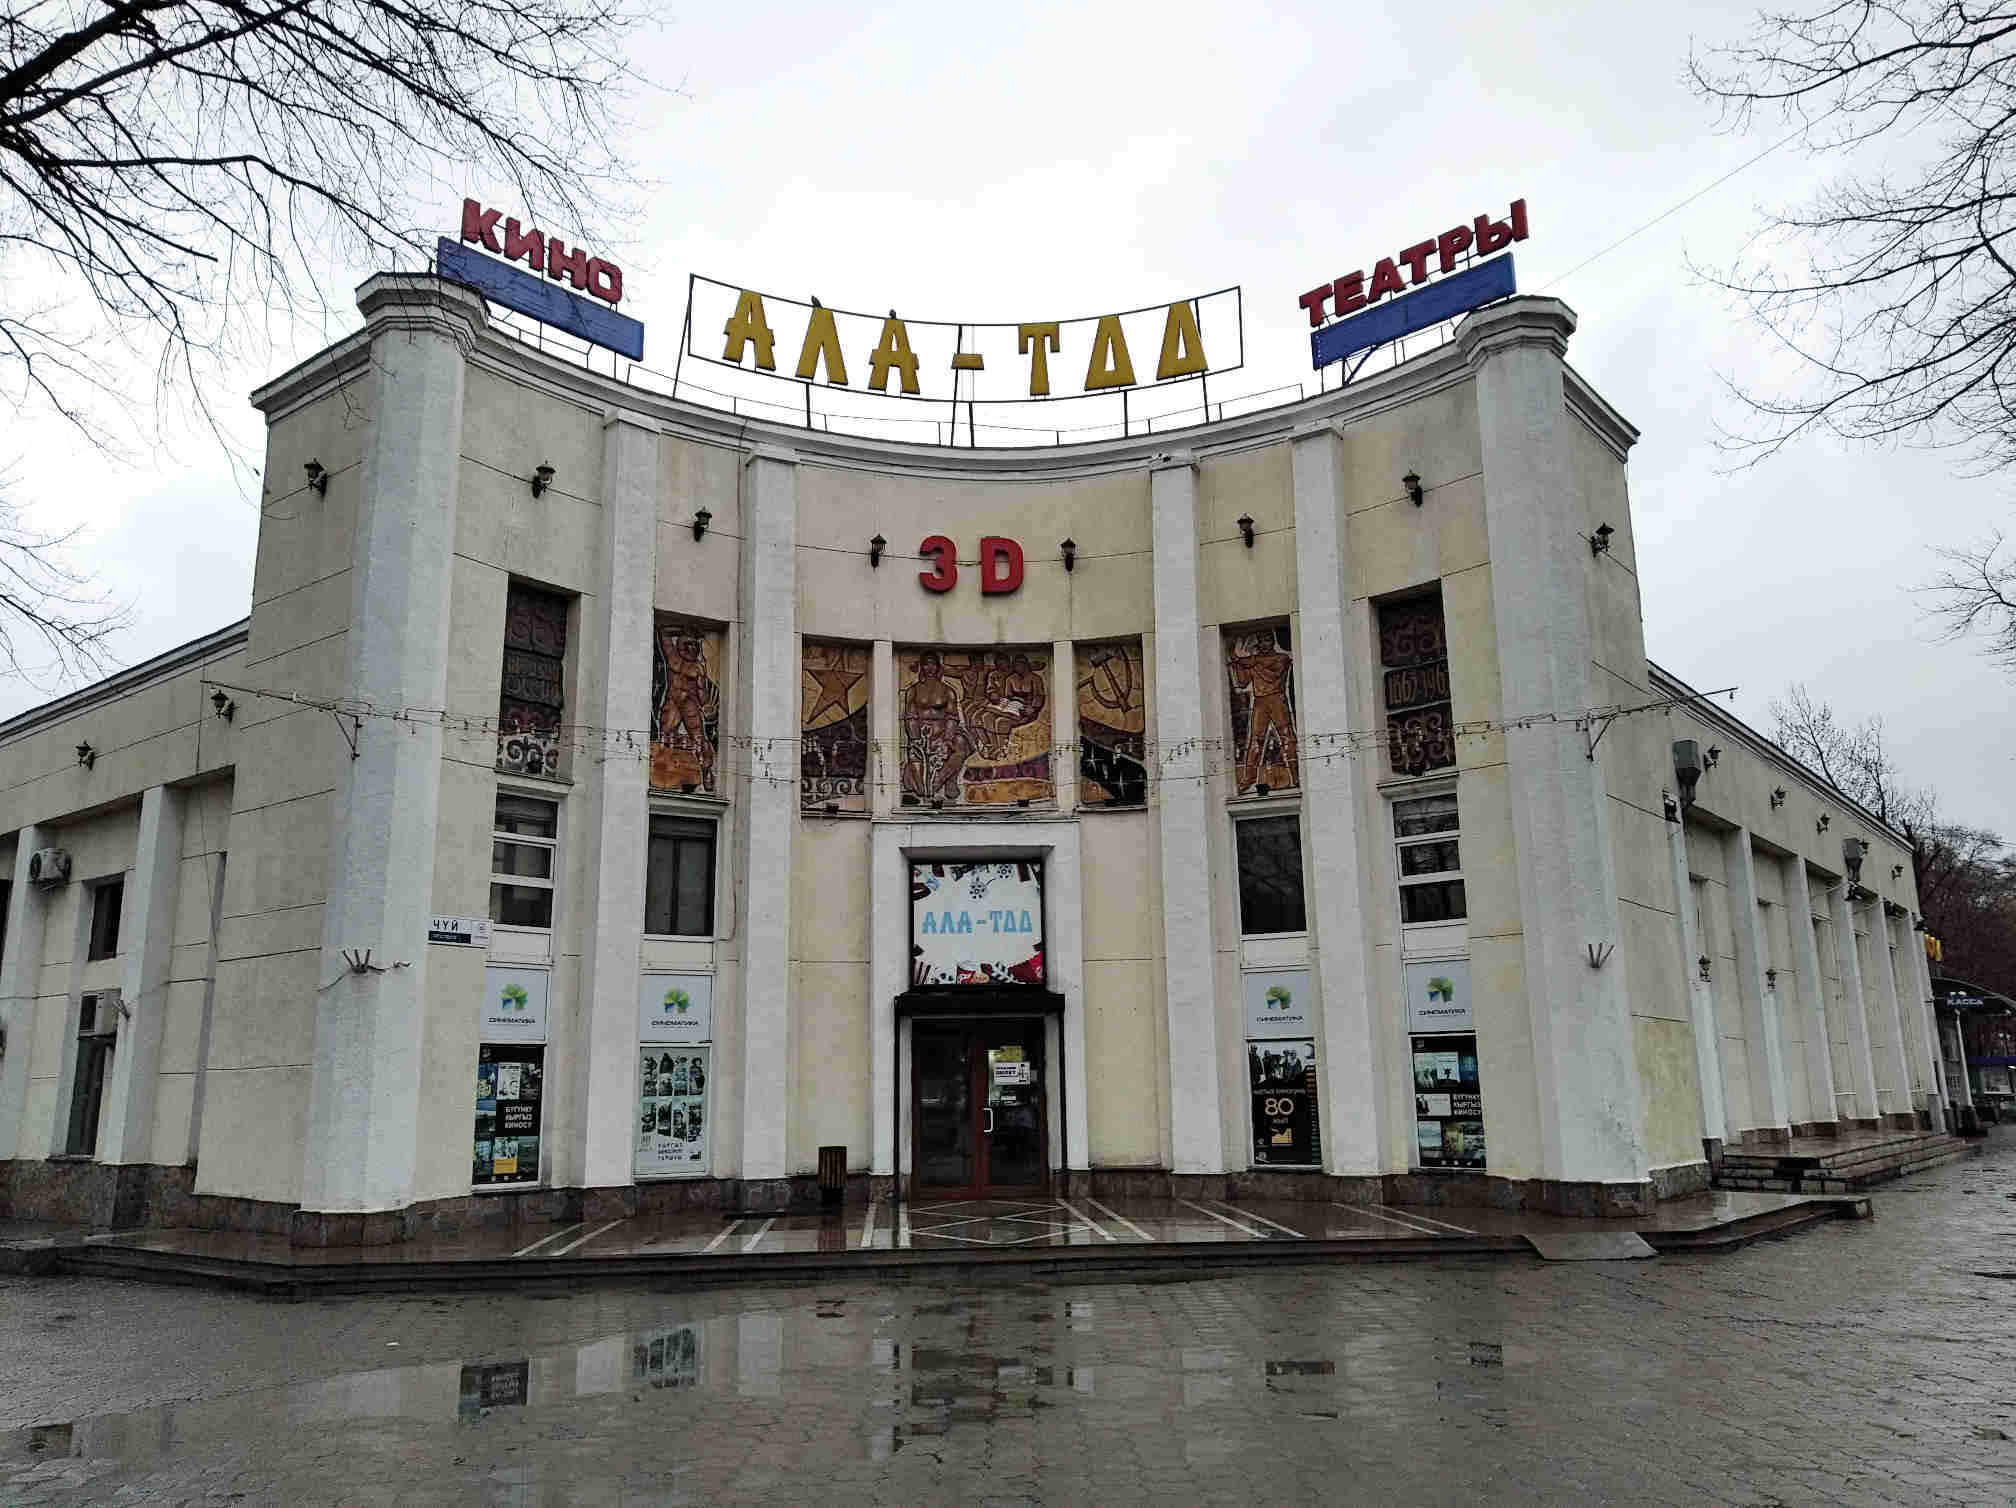 Пример кинотеатра №2. В Бишкеке подобной красоты с десяток зданий.Конкретно этот кинотеатр был открыт в 1938 году.